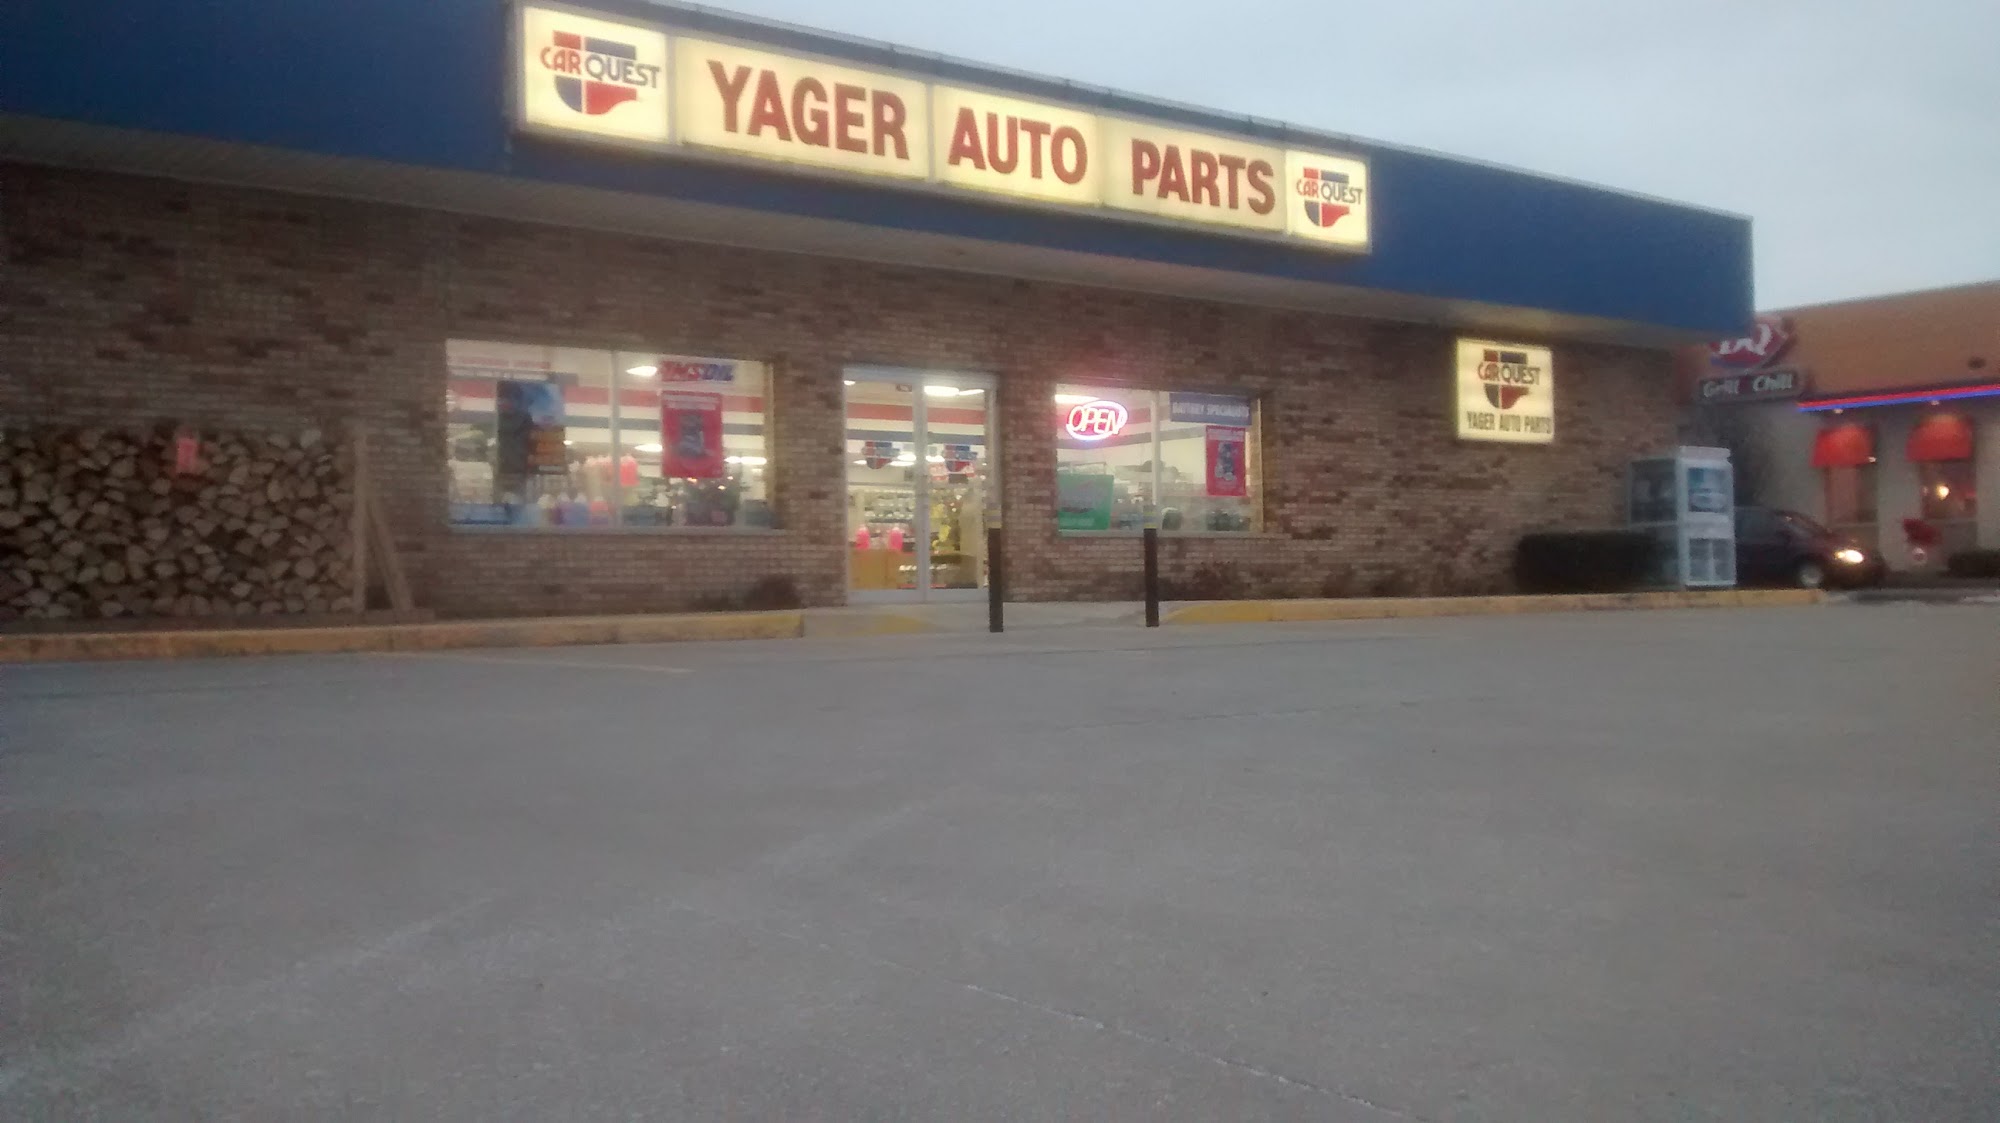 Carquest Auto Parts - Yager Auto Parts